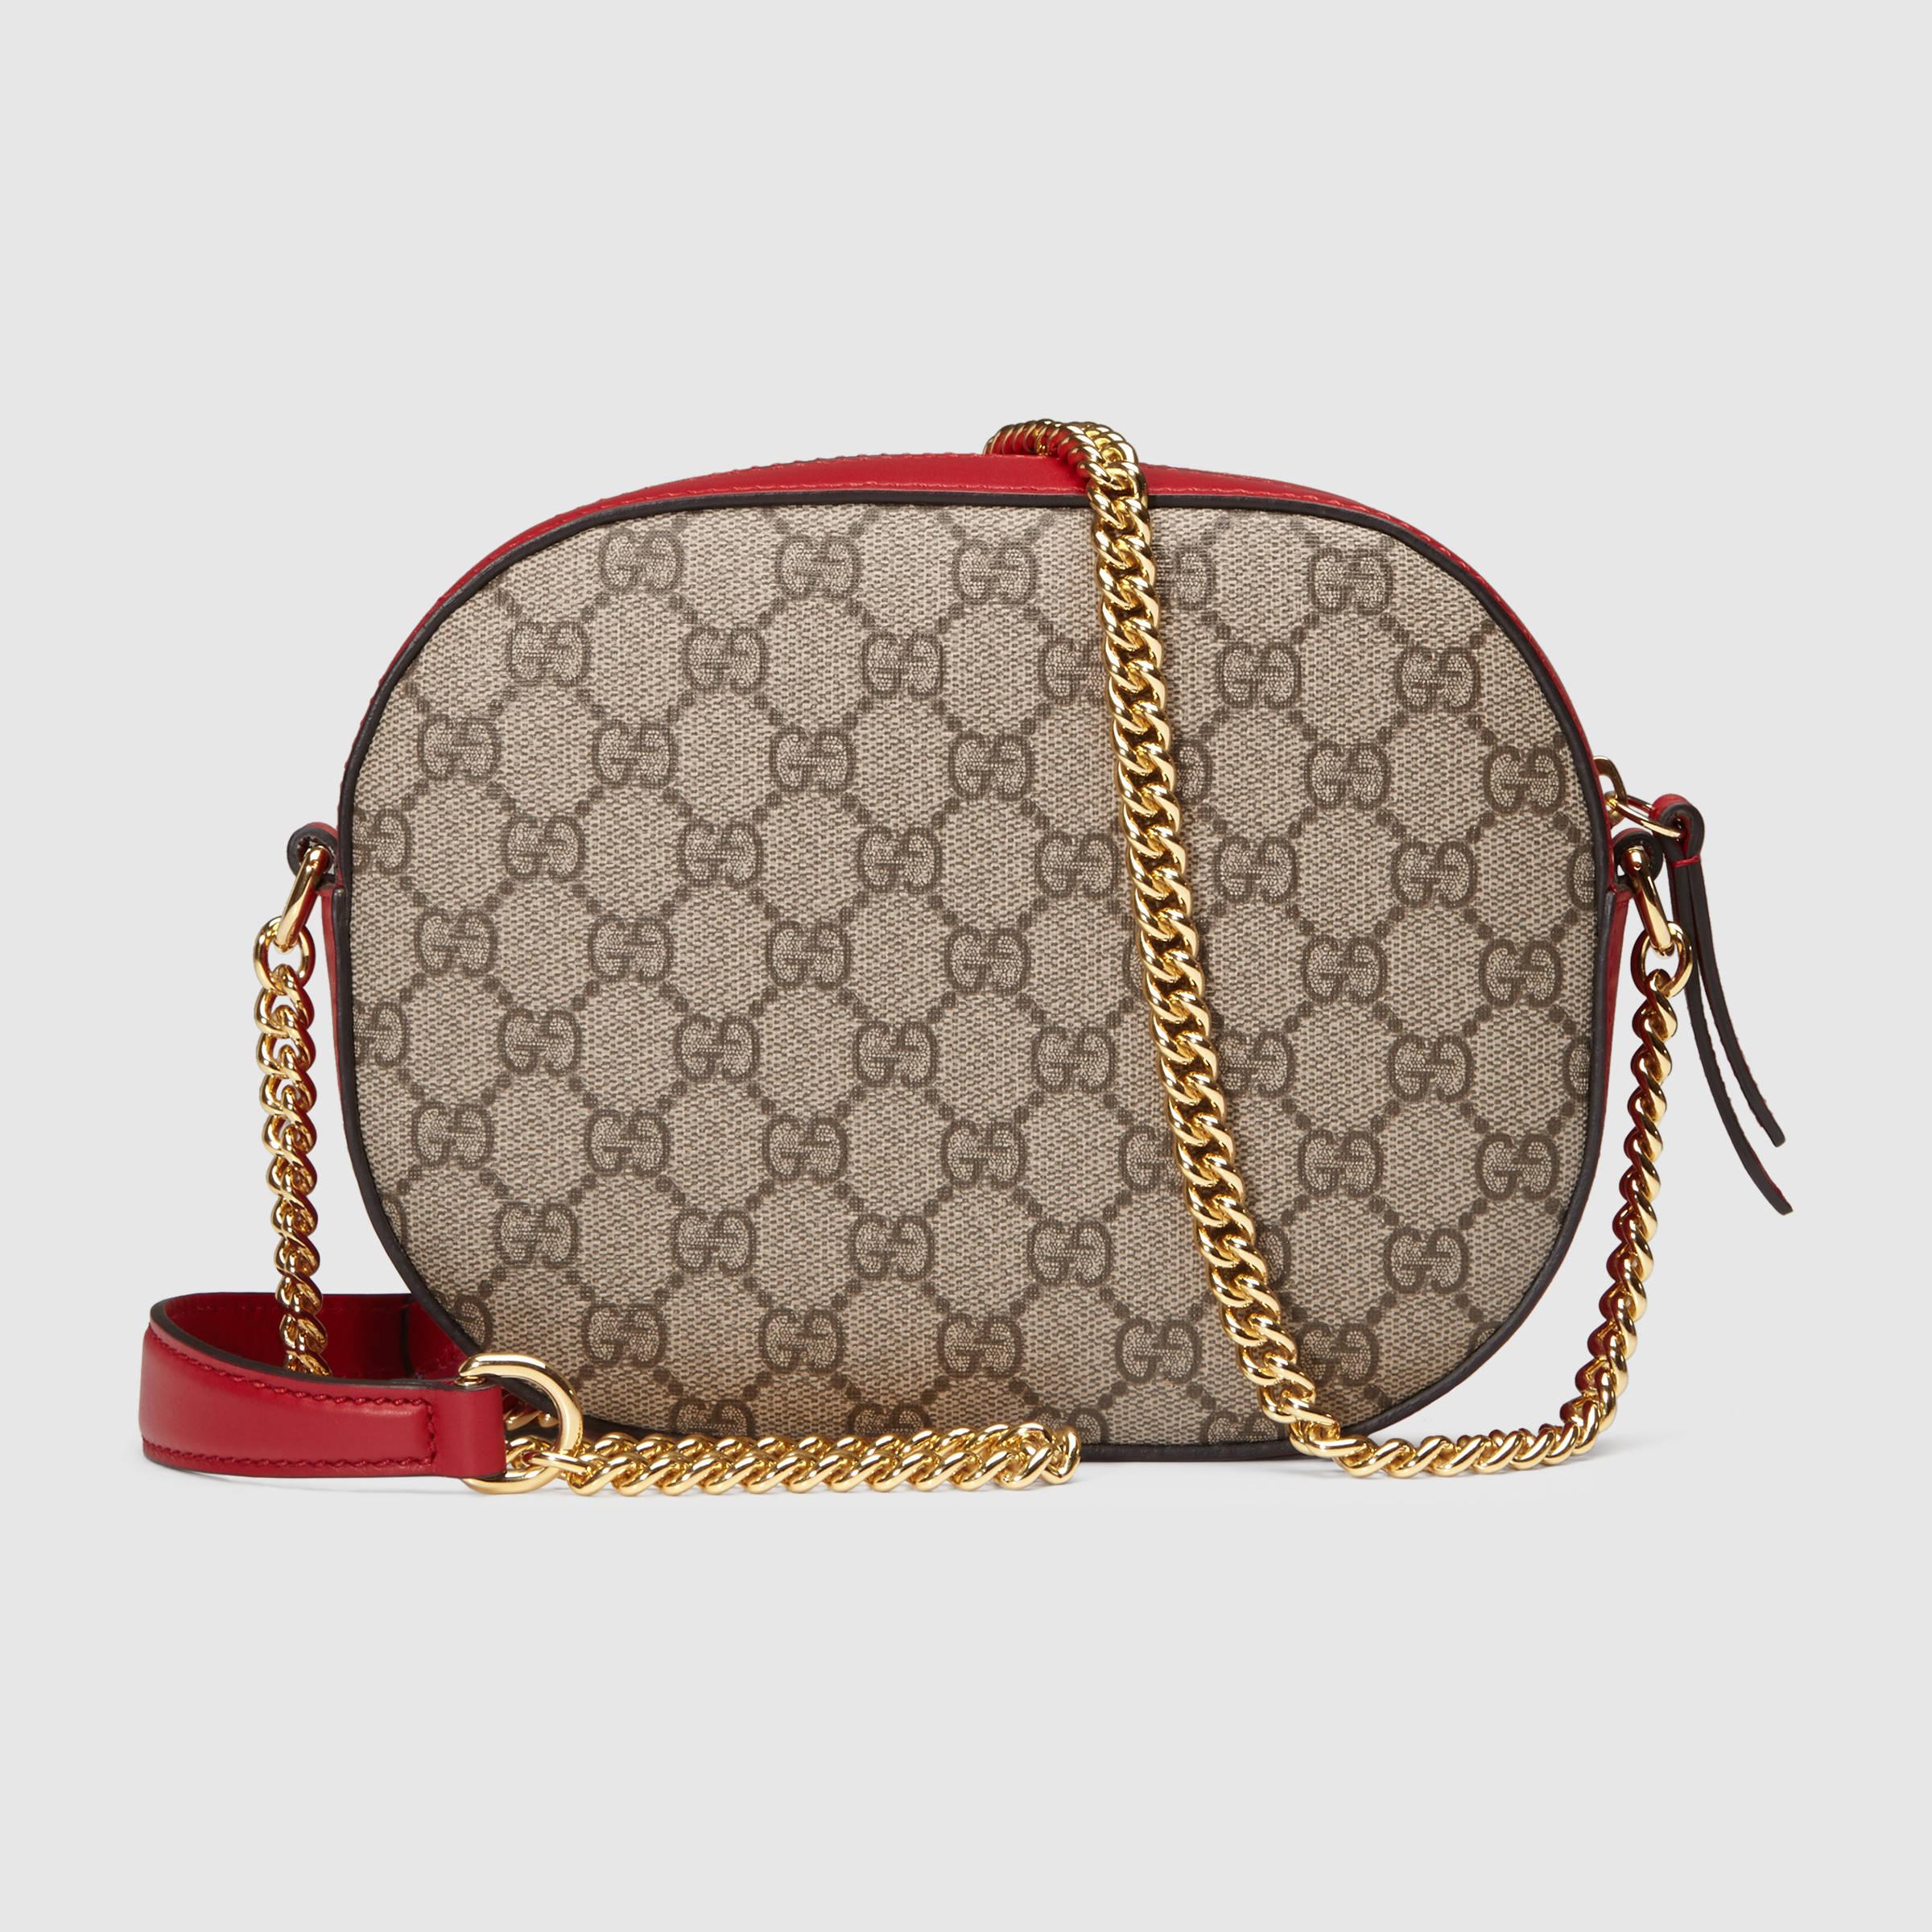 Lyst - Gucci Limited Edition GG Supreme Canvas Mini Chain Bag